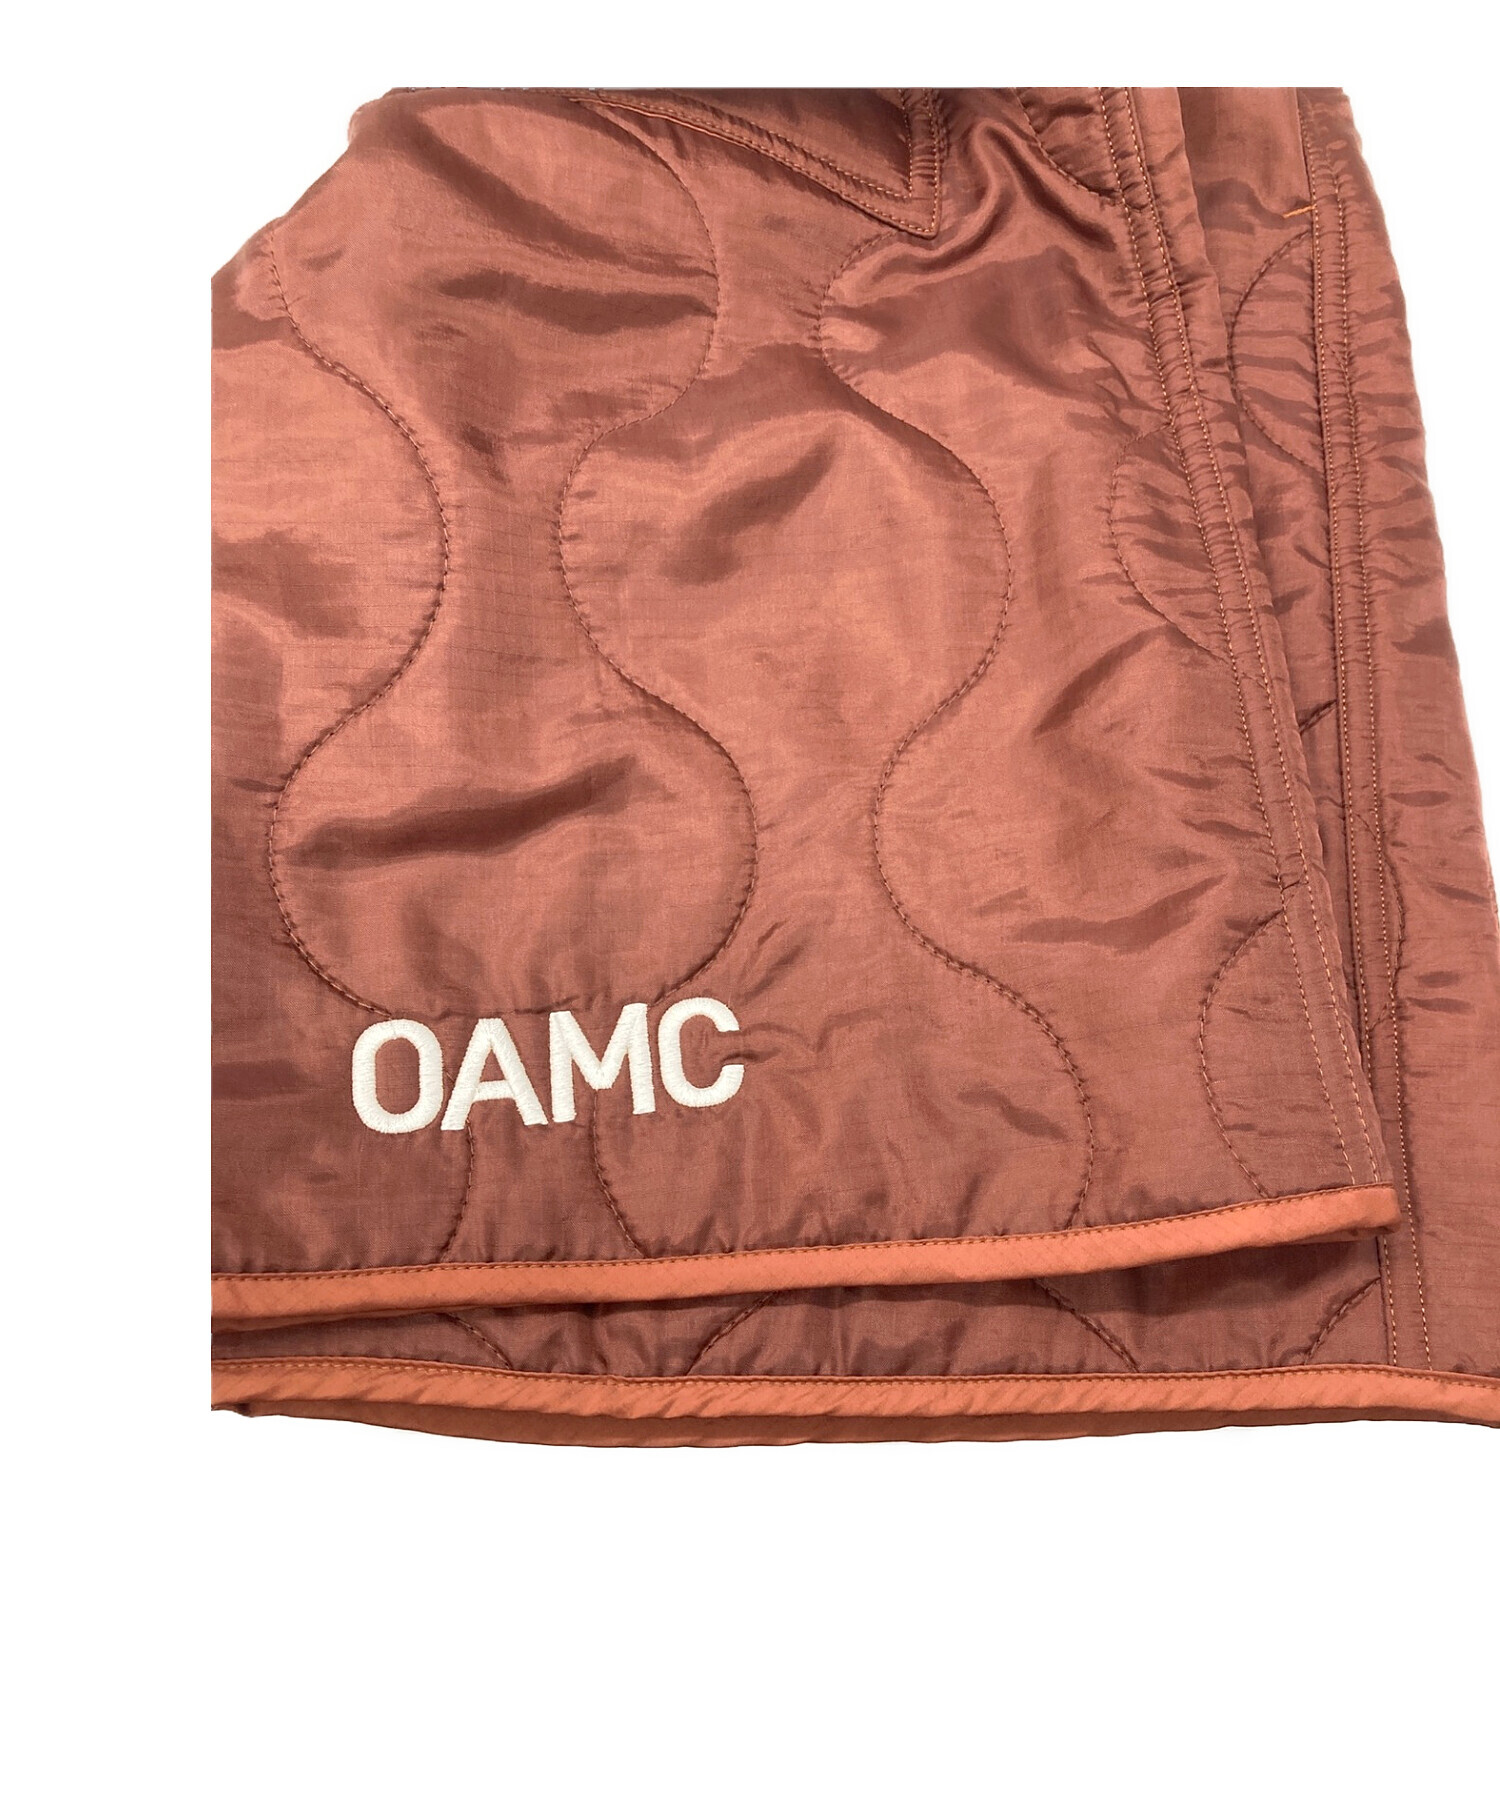 OAMC オーエーエムシー キルティング ハーフパンツ ブラウン oaxu339184